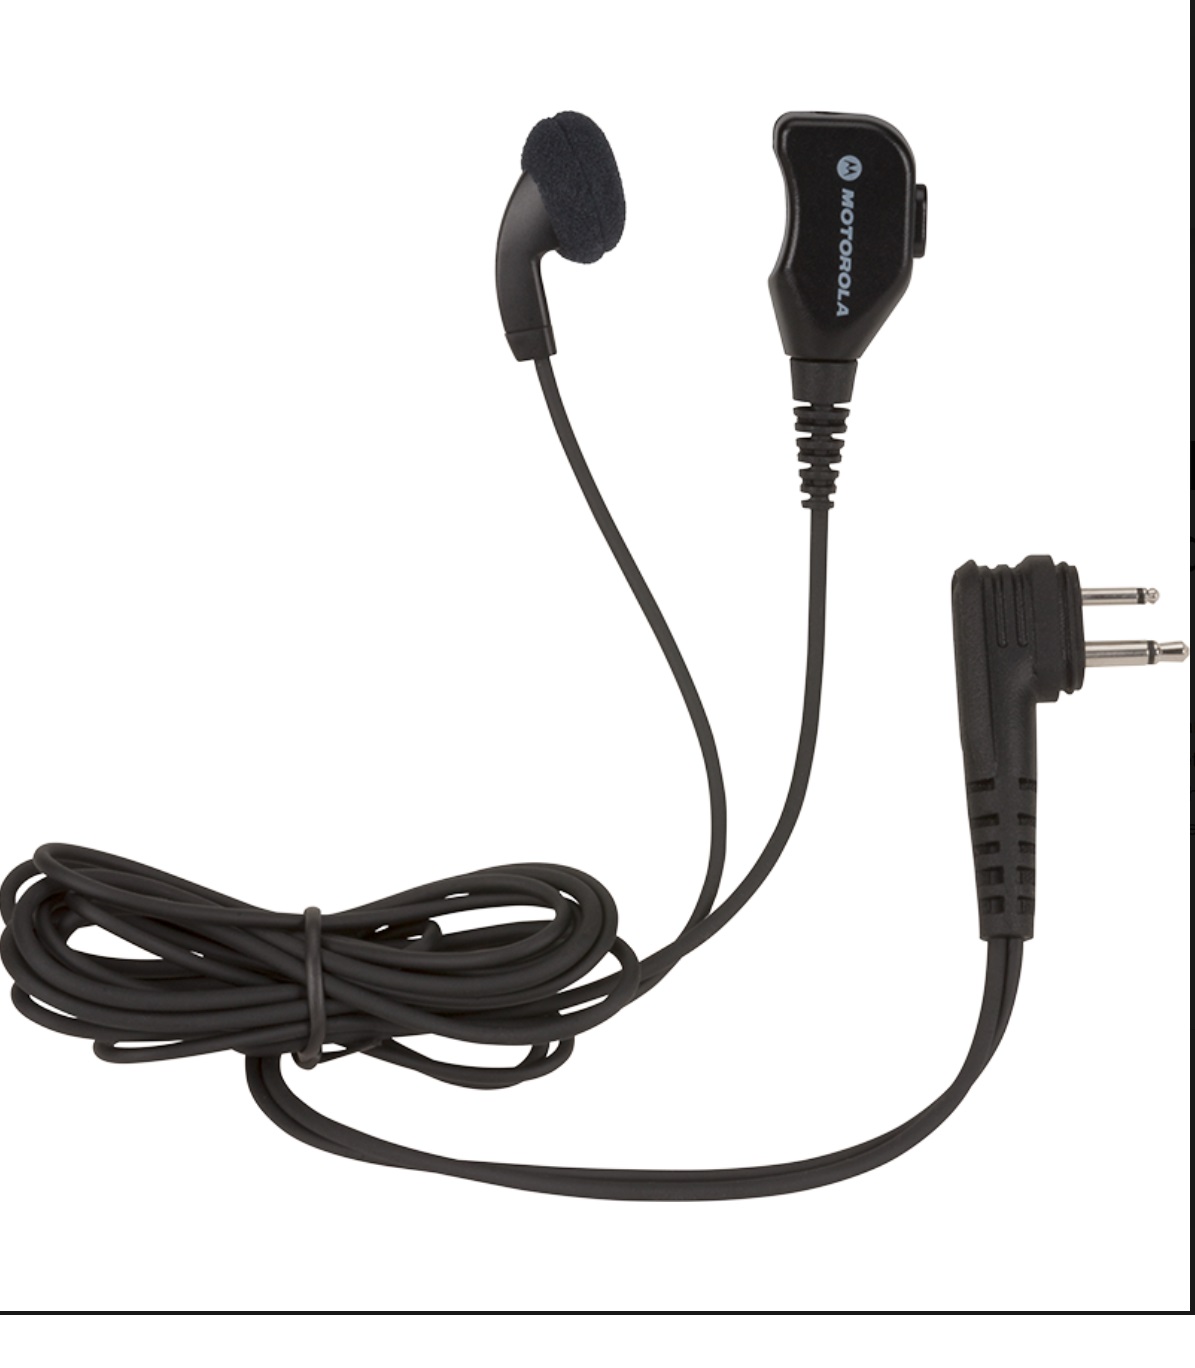 Motorola Kopfhörer mit Mikrofon und PTT Taste für Motorola CLR446 CLR446 Plus HKLN4605A